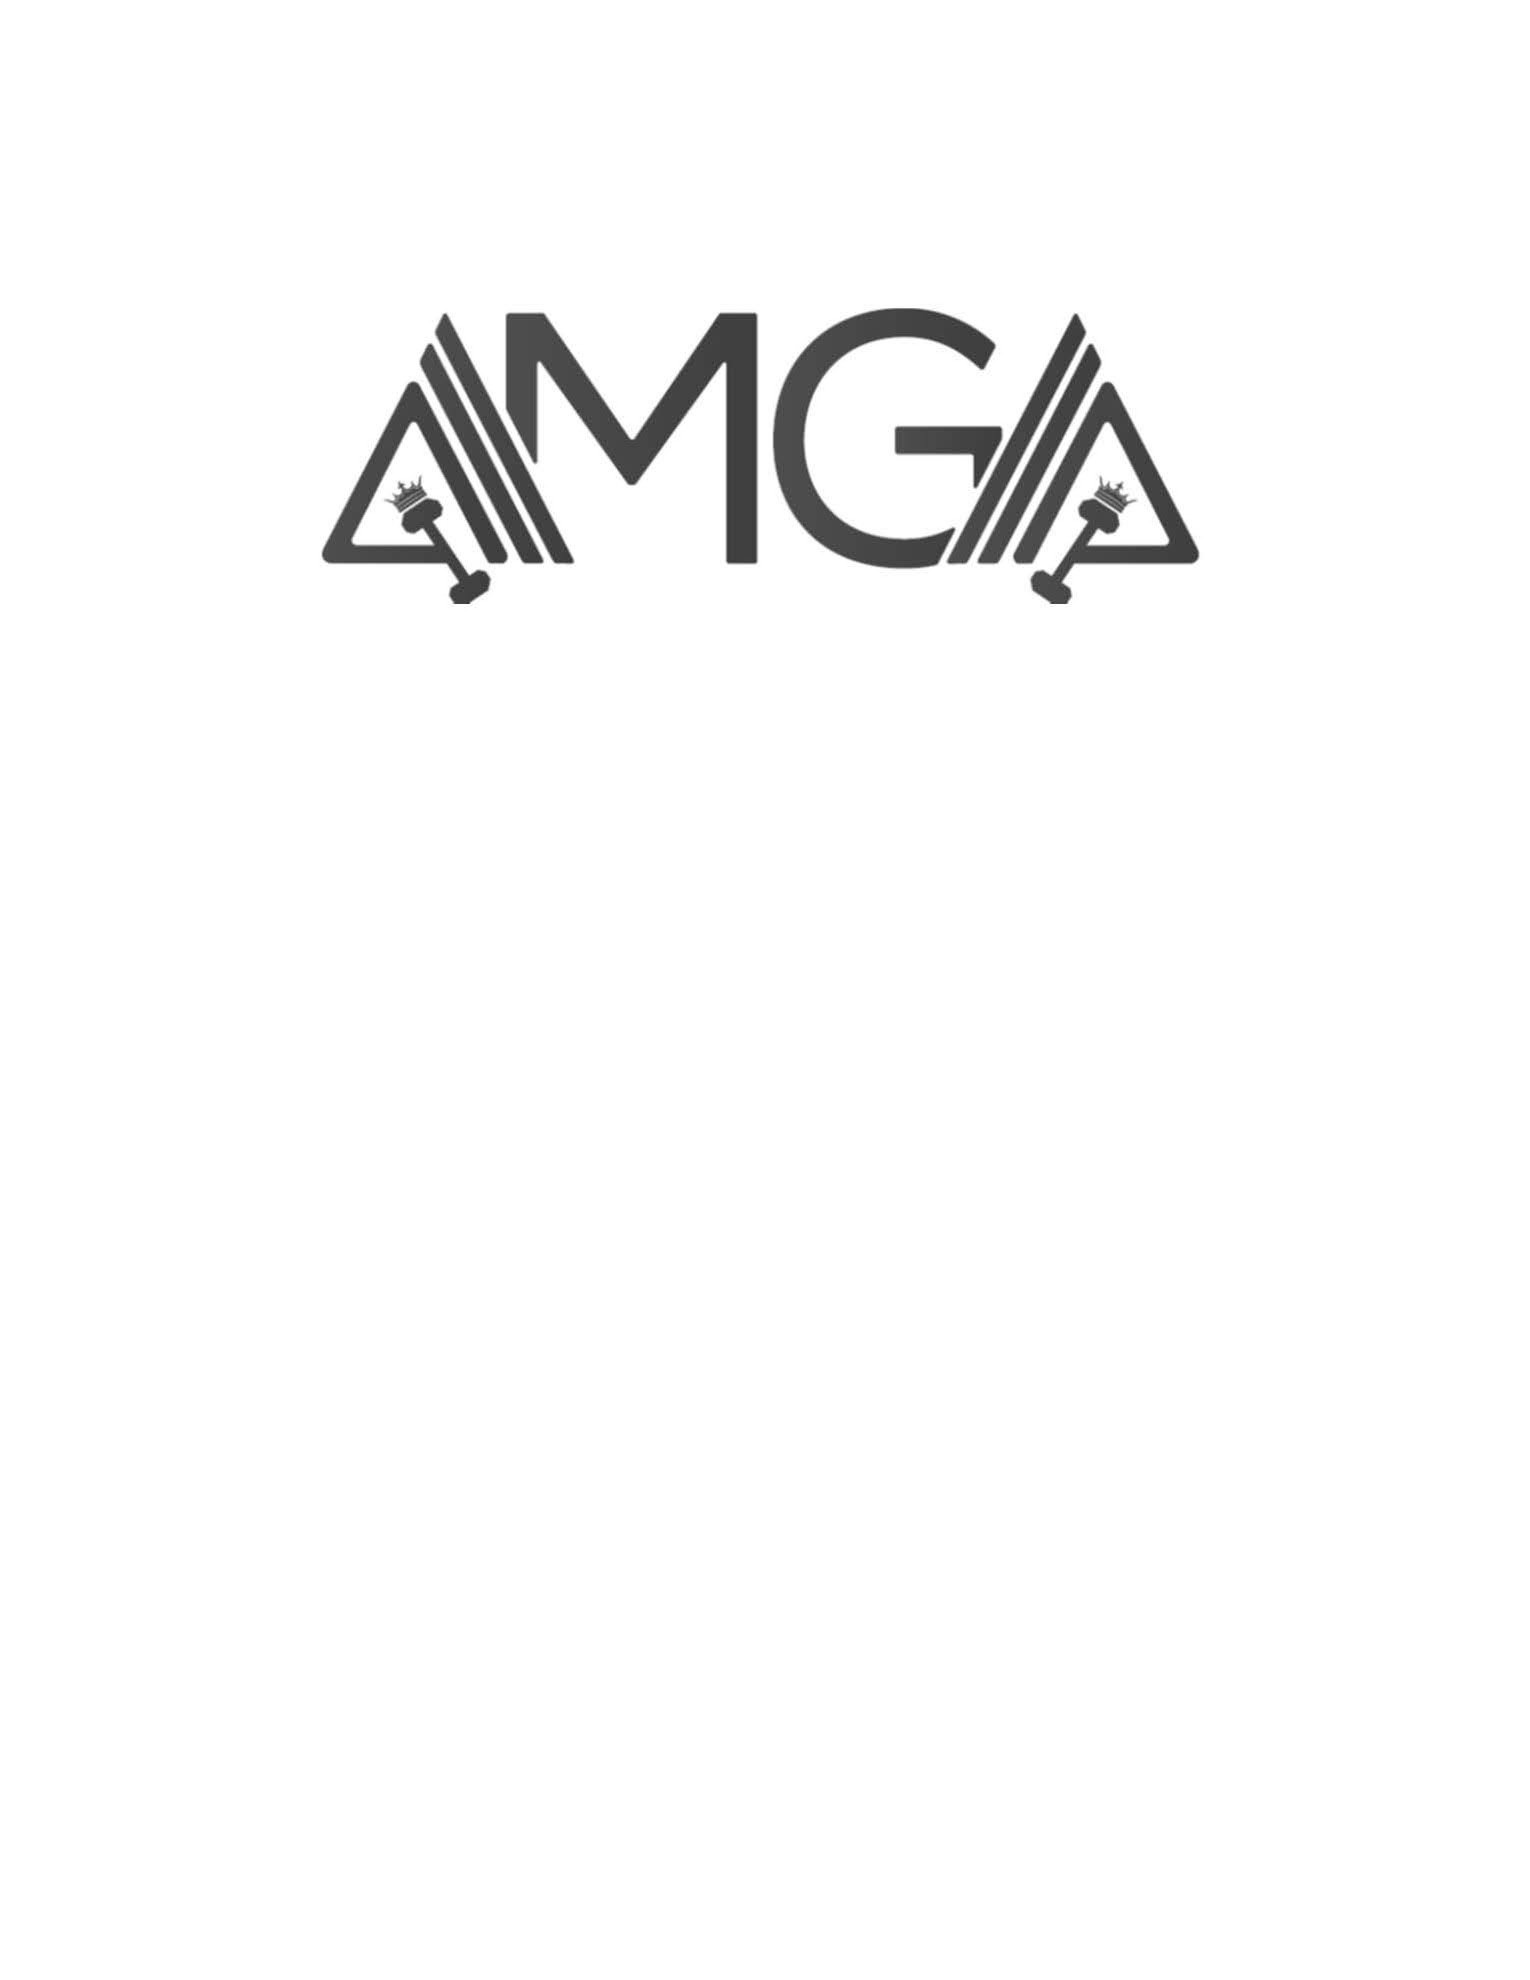 Trademark Logo AMGA